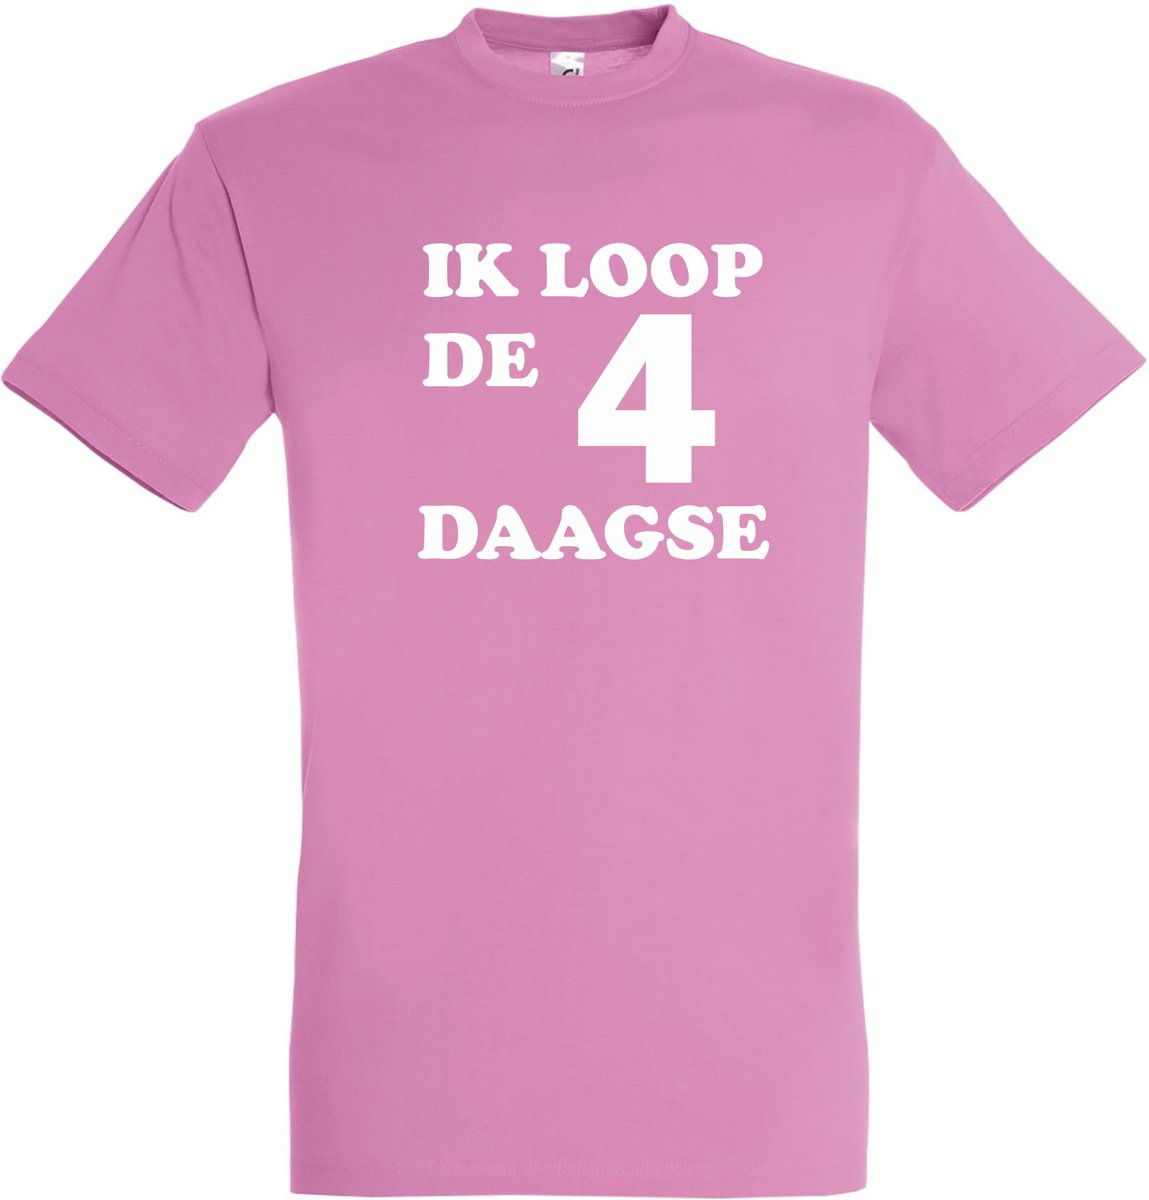 T-shirt Ik loop de 4 daagse |Wandelvierdaagse | vierdaagse Nijmegen | Roze woensdag | Roze | maat S